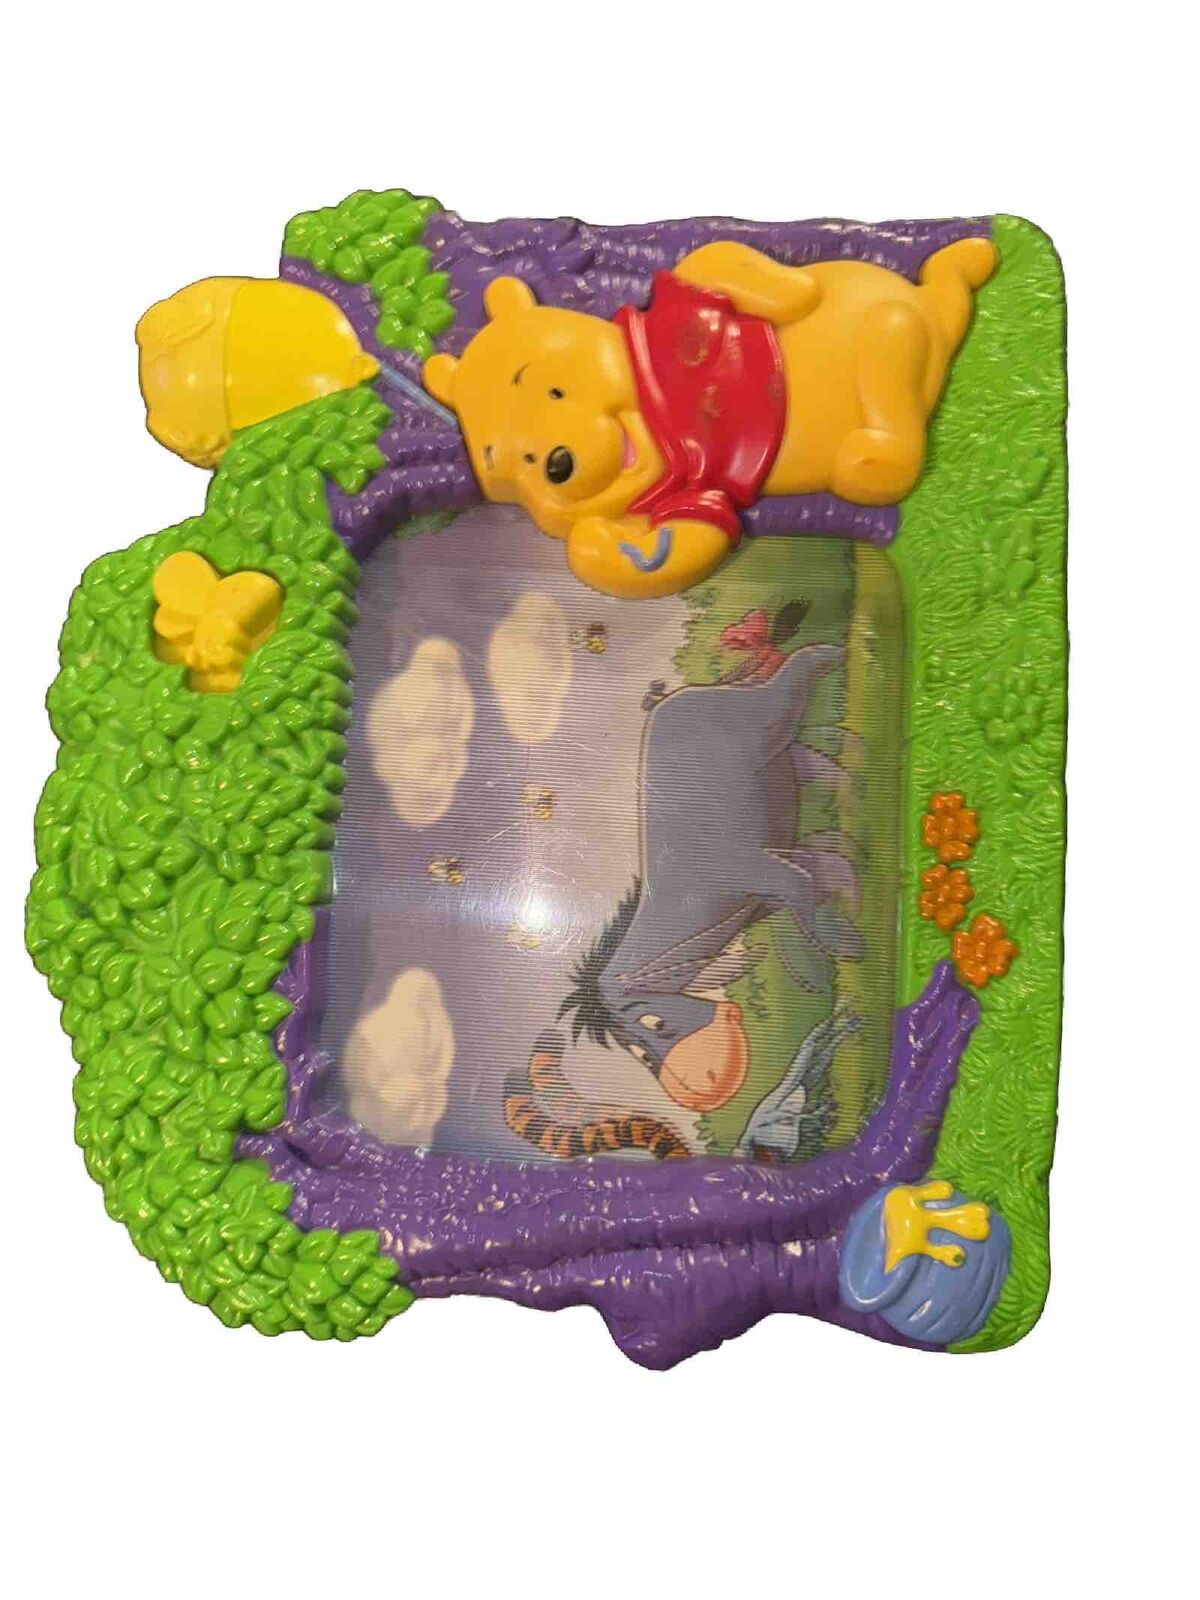 Vintage 2001 Disney Winnie The Pooh Musical Baby TV 